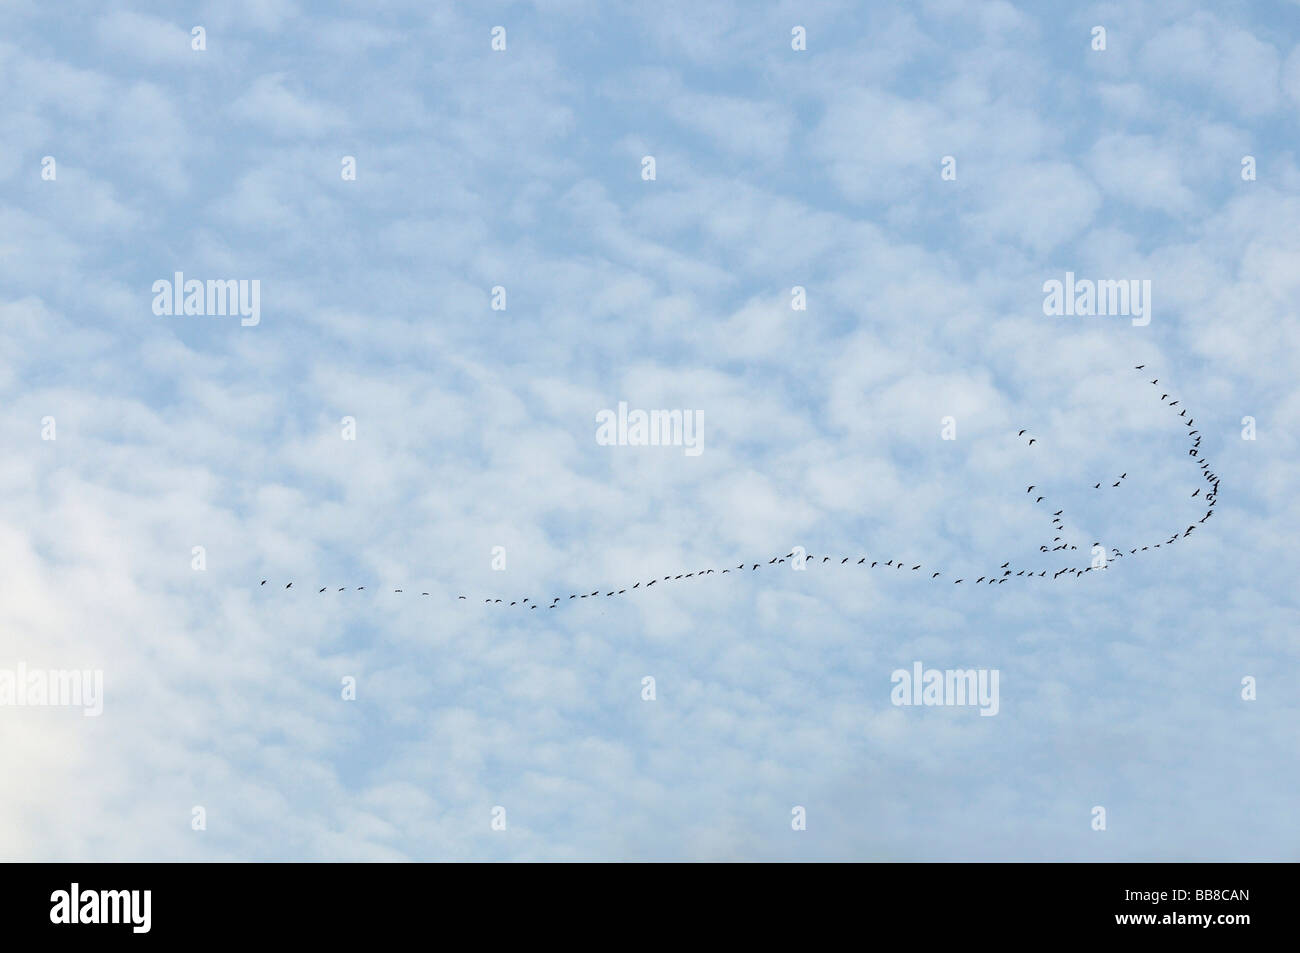 Formazione covey delle gru contro il cielo con un velo di nuvole, tipica di una formazione di volo Foto Stock